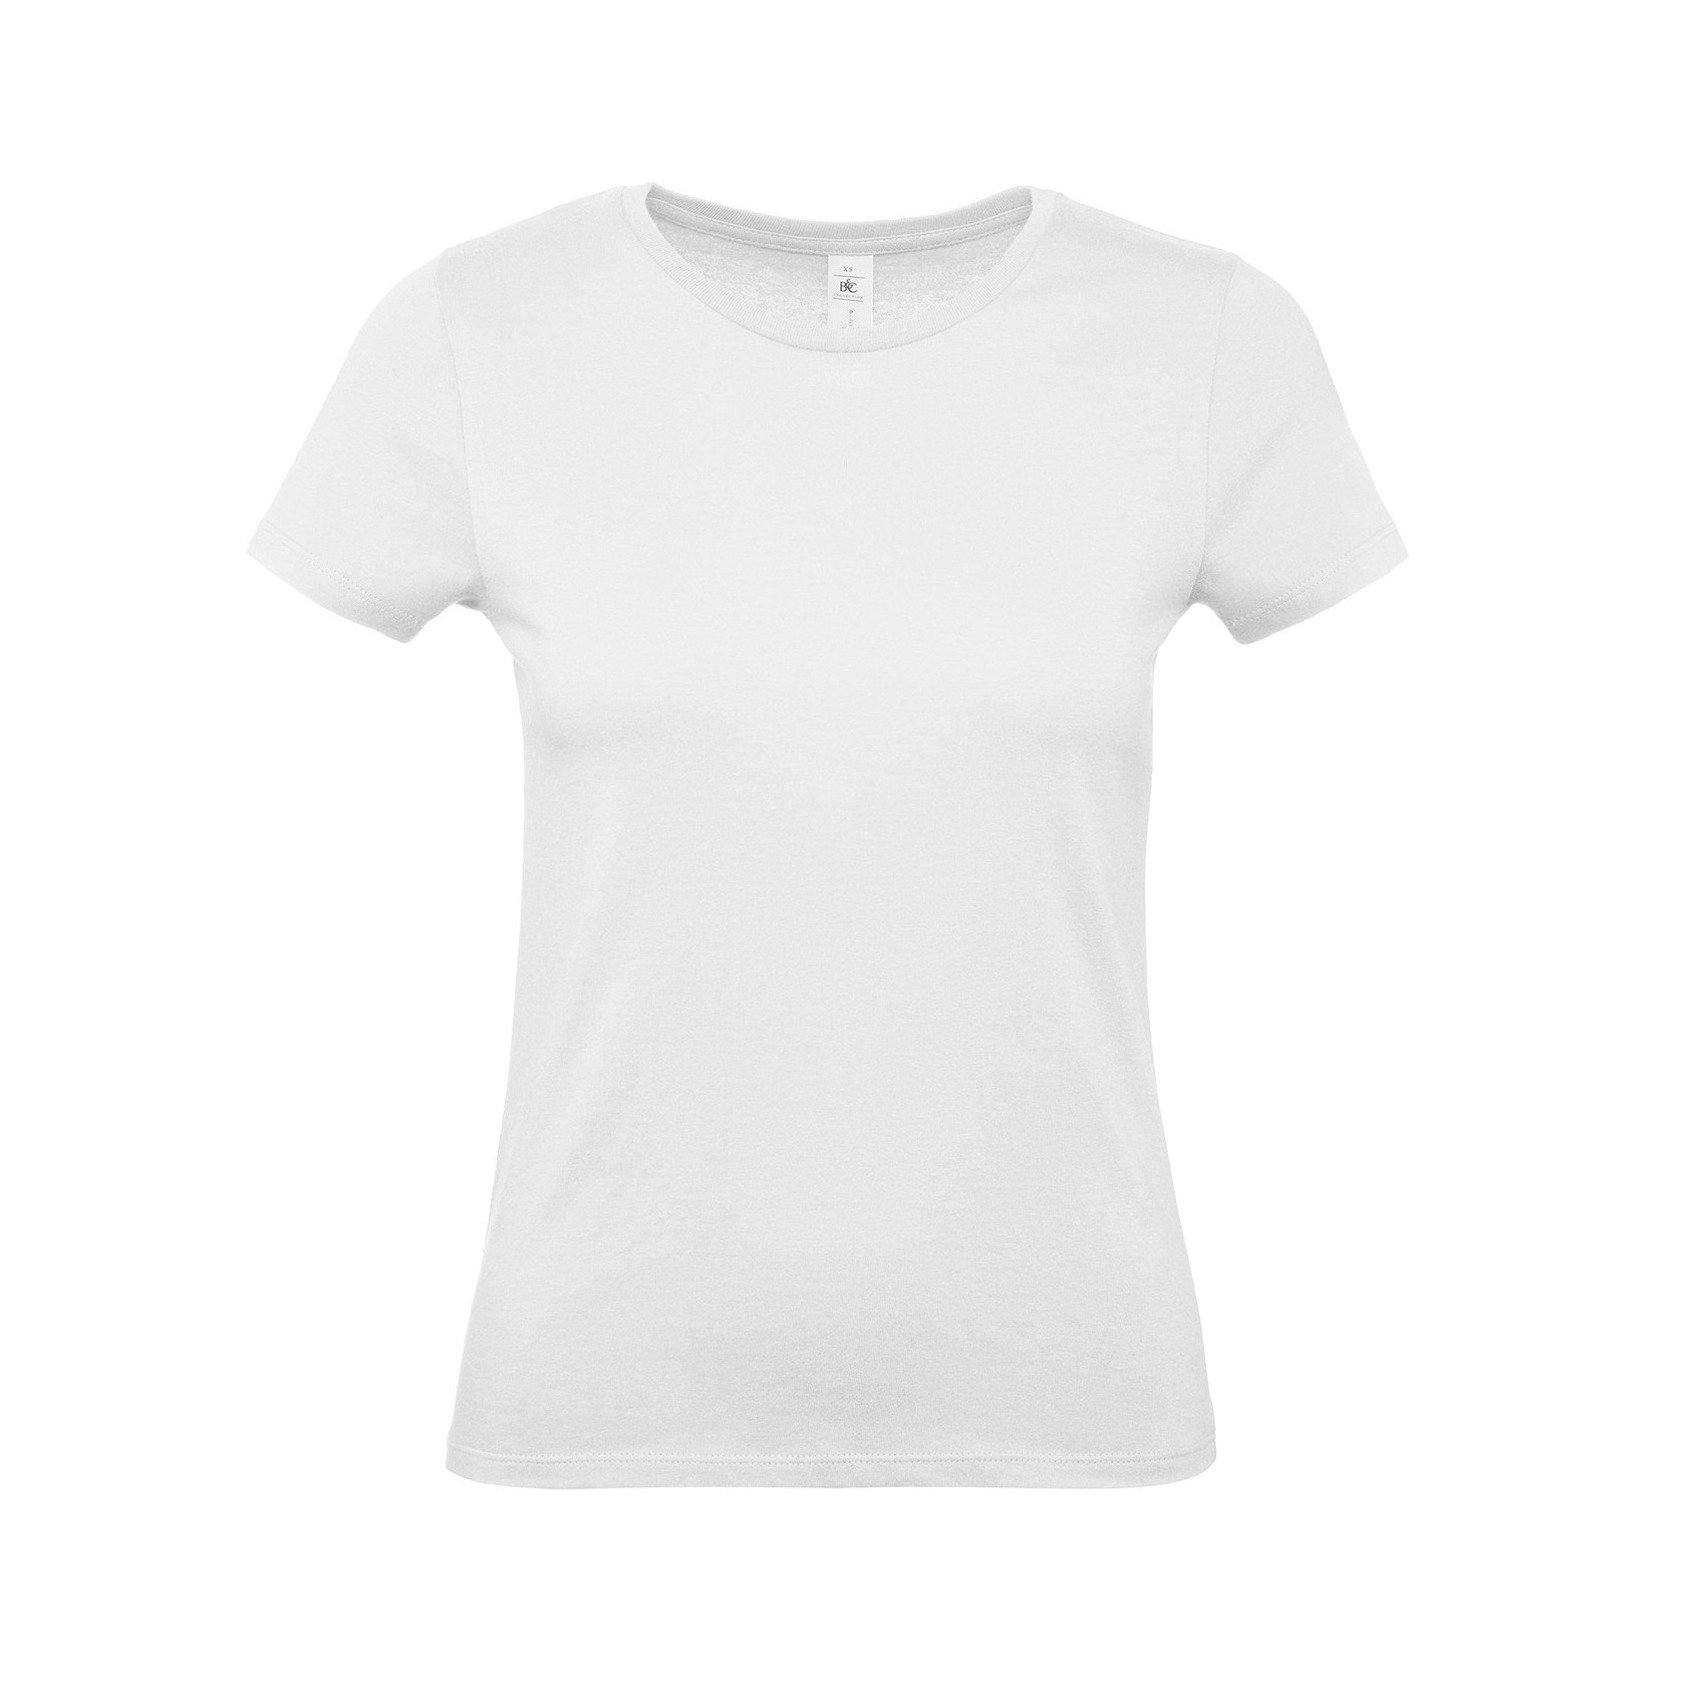 Set van 2x stuks wit basic t-shirts met ronde hals voor dames van katoen, maat: 2XL (44)